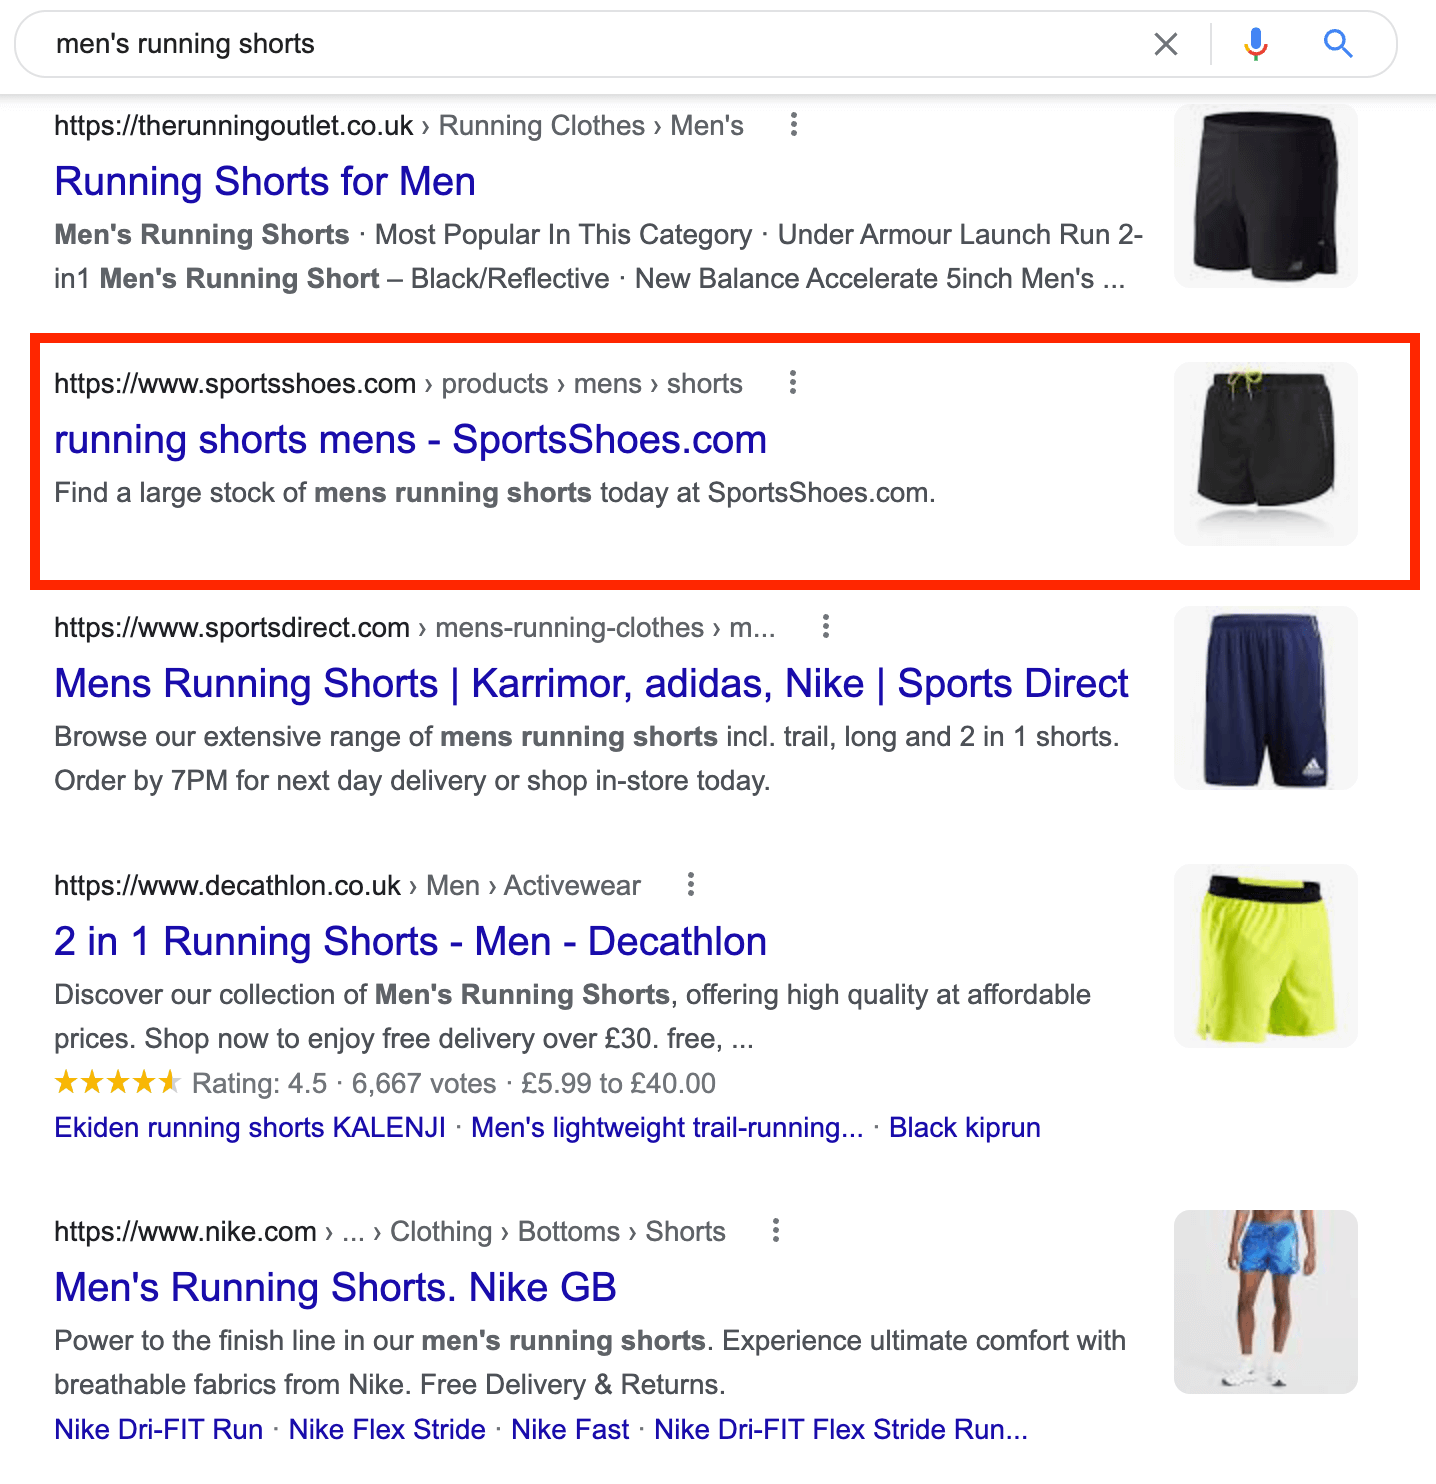 Google SERPs for “men’s running shorts”